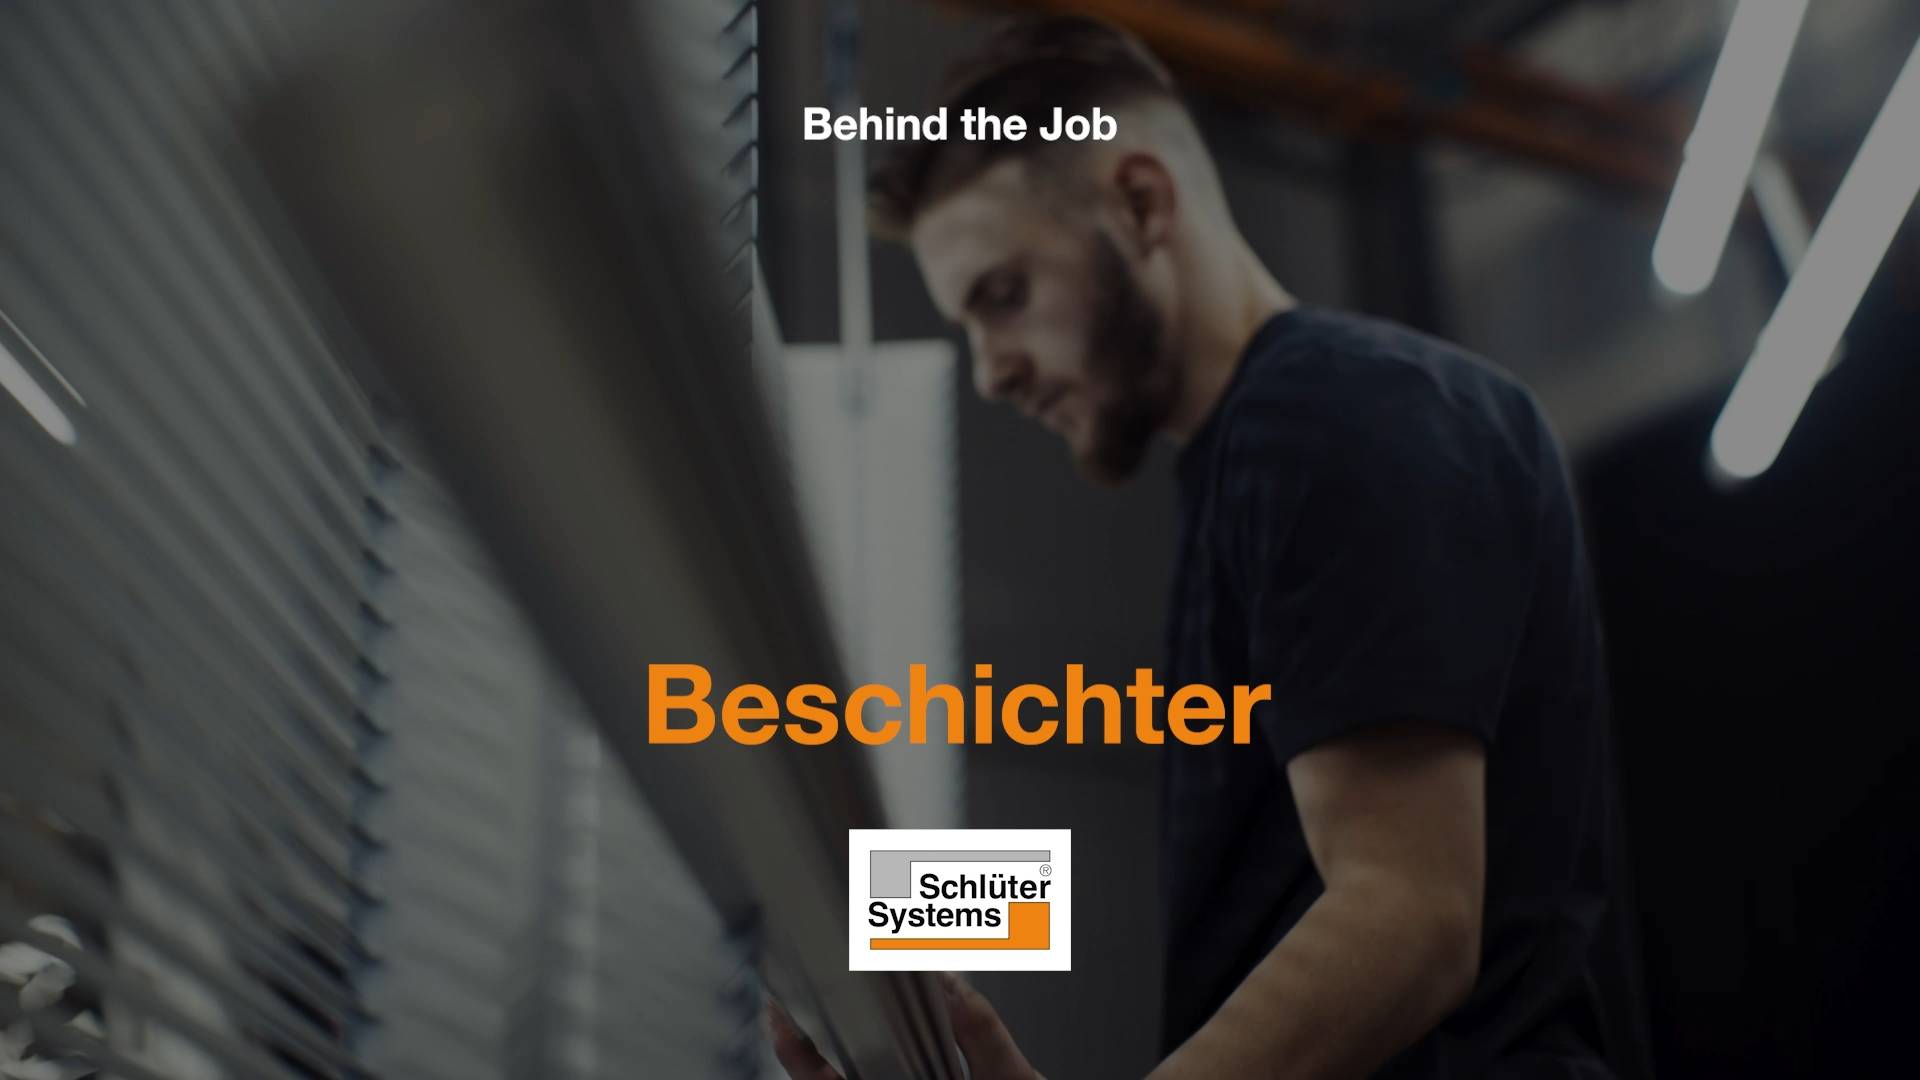 Behind the Job - Beschichter